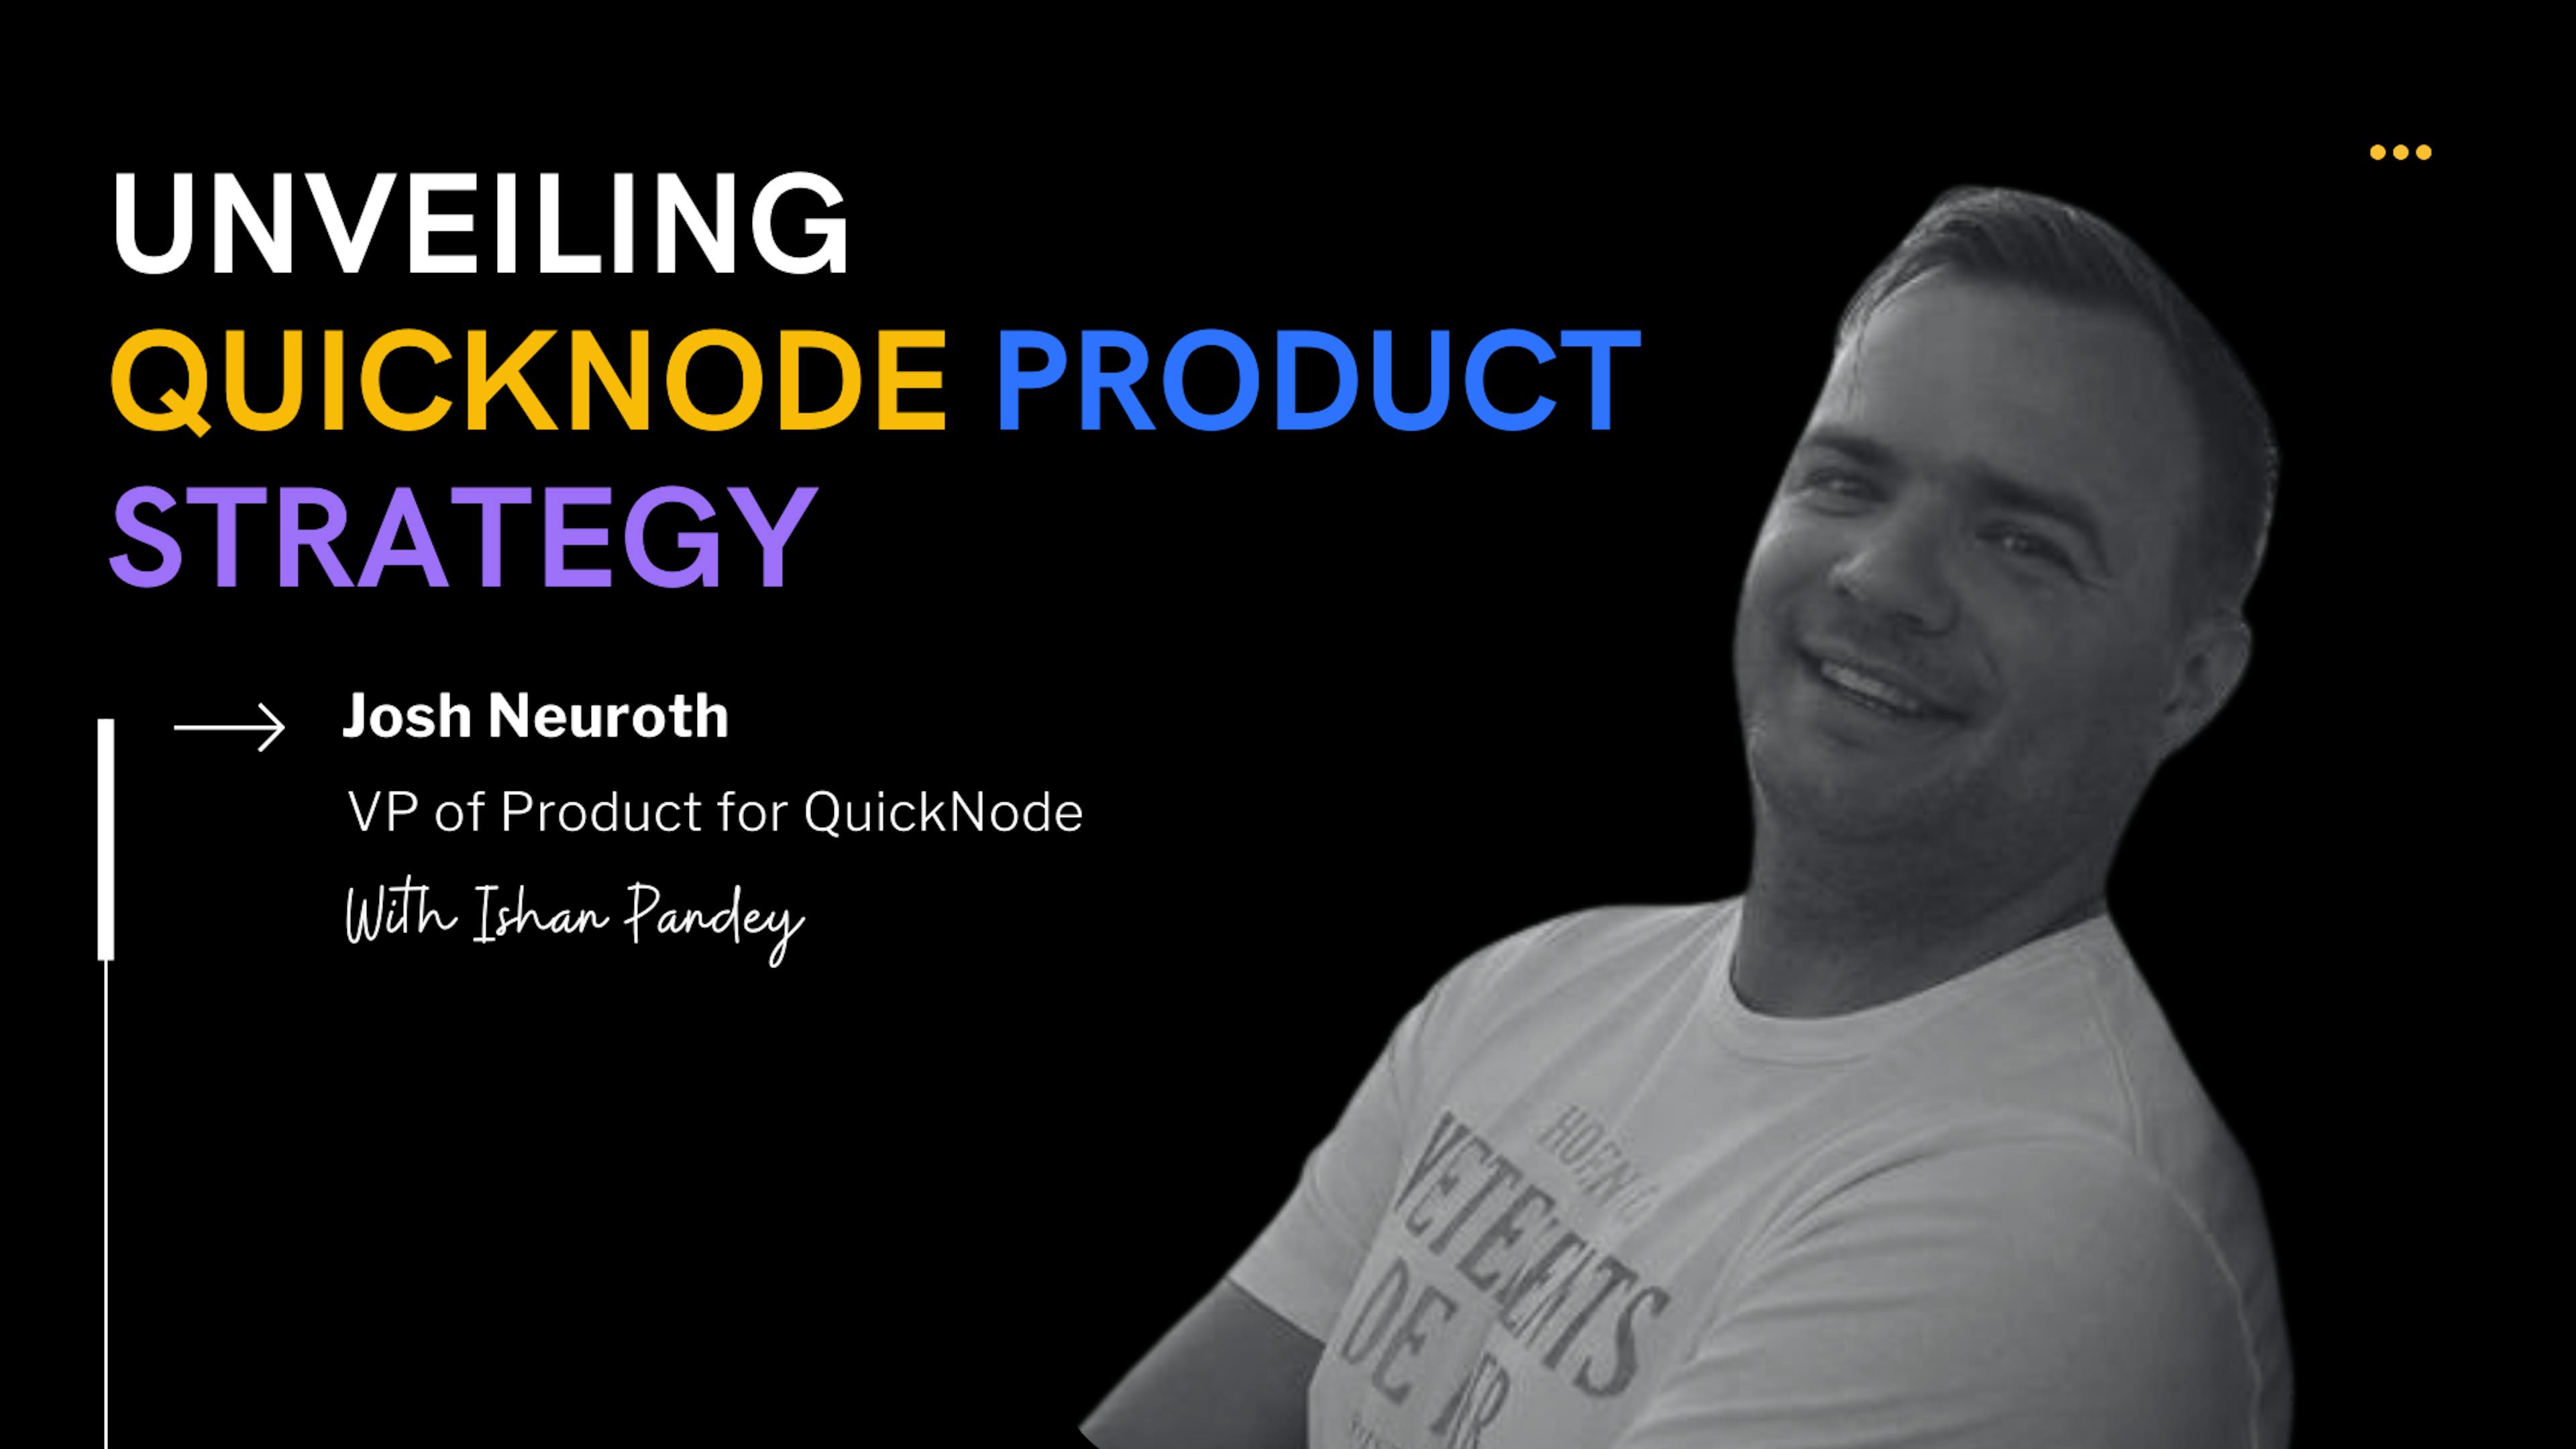 featured image - Josh Neuroth, vicepresidente de producto de QuickNode, sobre infraestructura Blockchain, paquetes acumulativos e innovación Web3